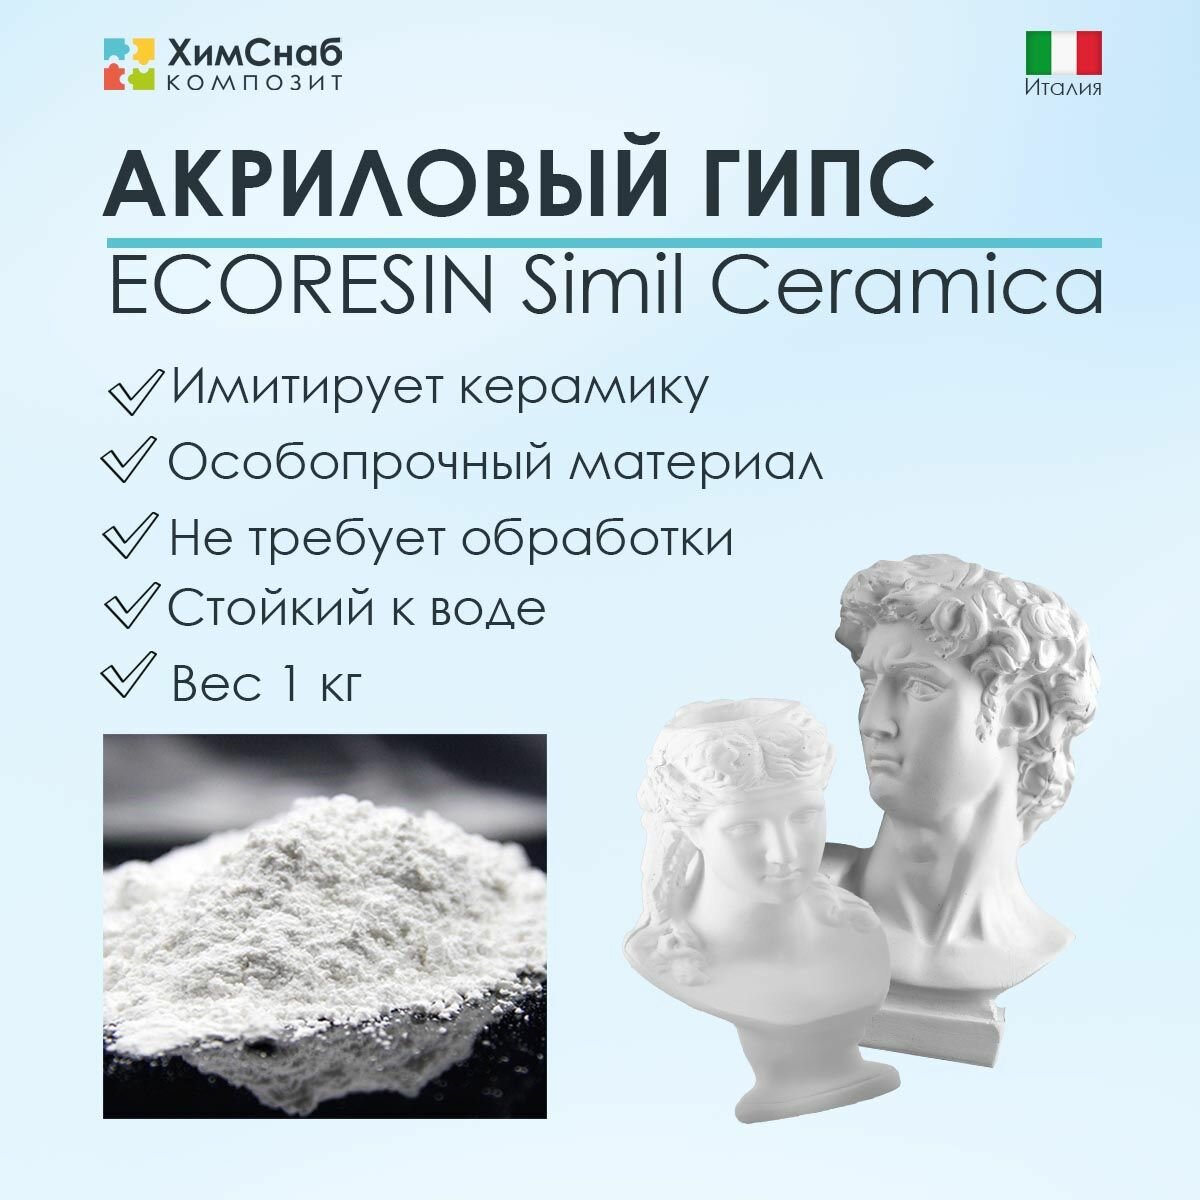 Акриловый гипс Экорезин ECORESIN Simil Ceramica для творчества, изготовления фигурок, имитирующий керамику, стойкий к воде, особопрочный 1 кг